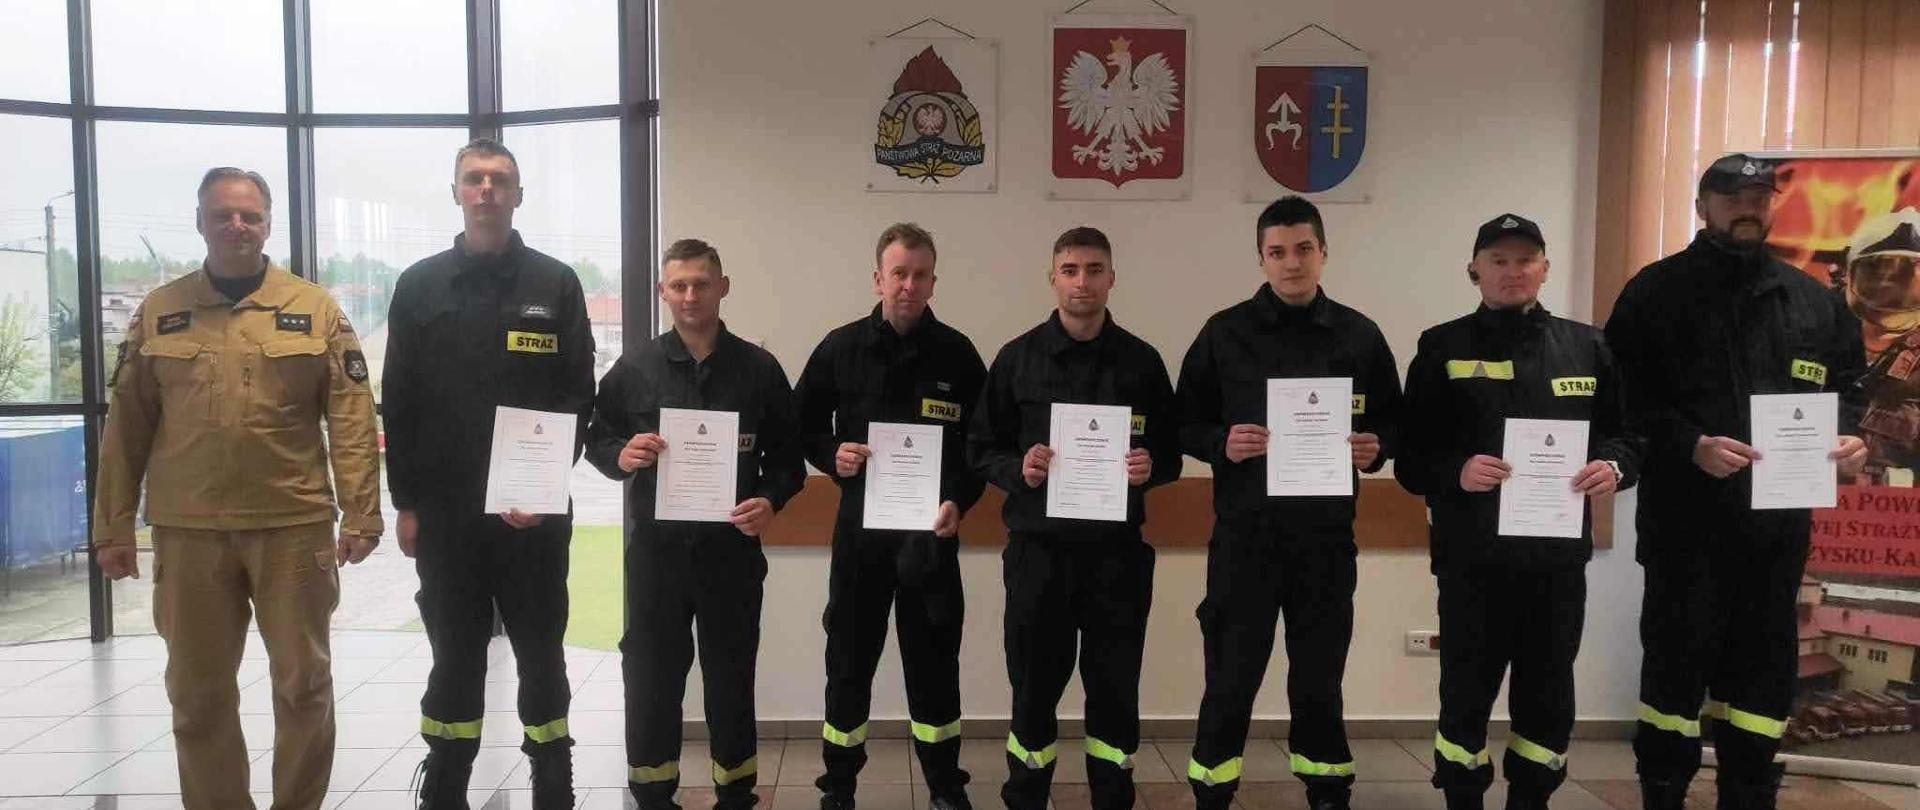 Grupowe zdjęcie osób, które ukończyły szkolenie Kierowców Konserwatorów Sprzętu Ratowniczego na auli KP PSP w Skarżysku-Kam.